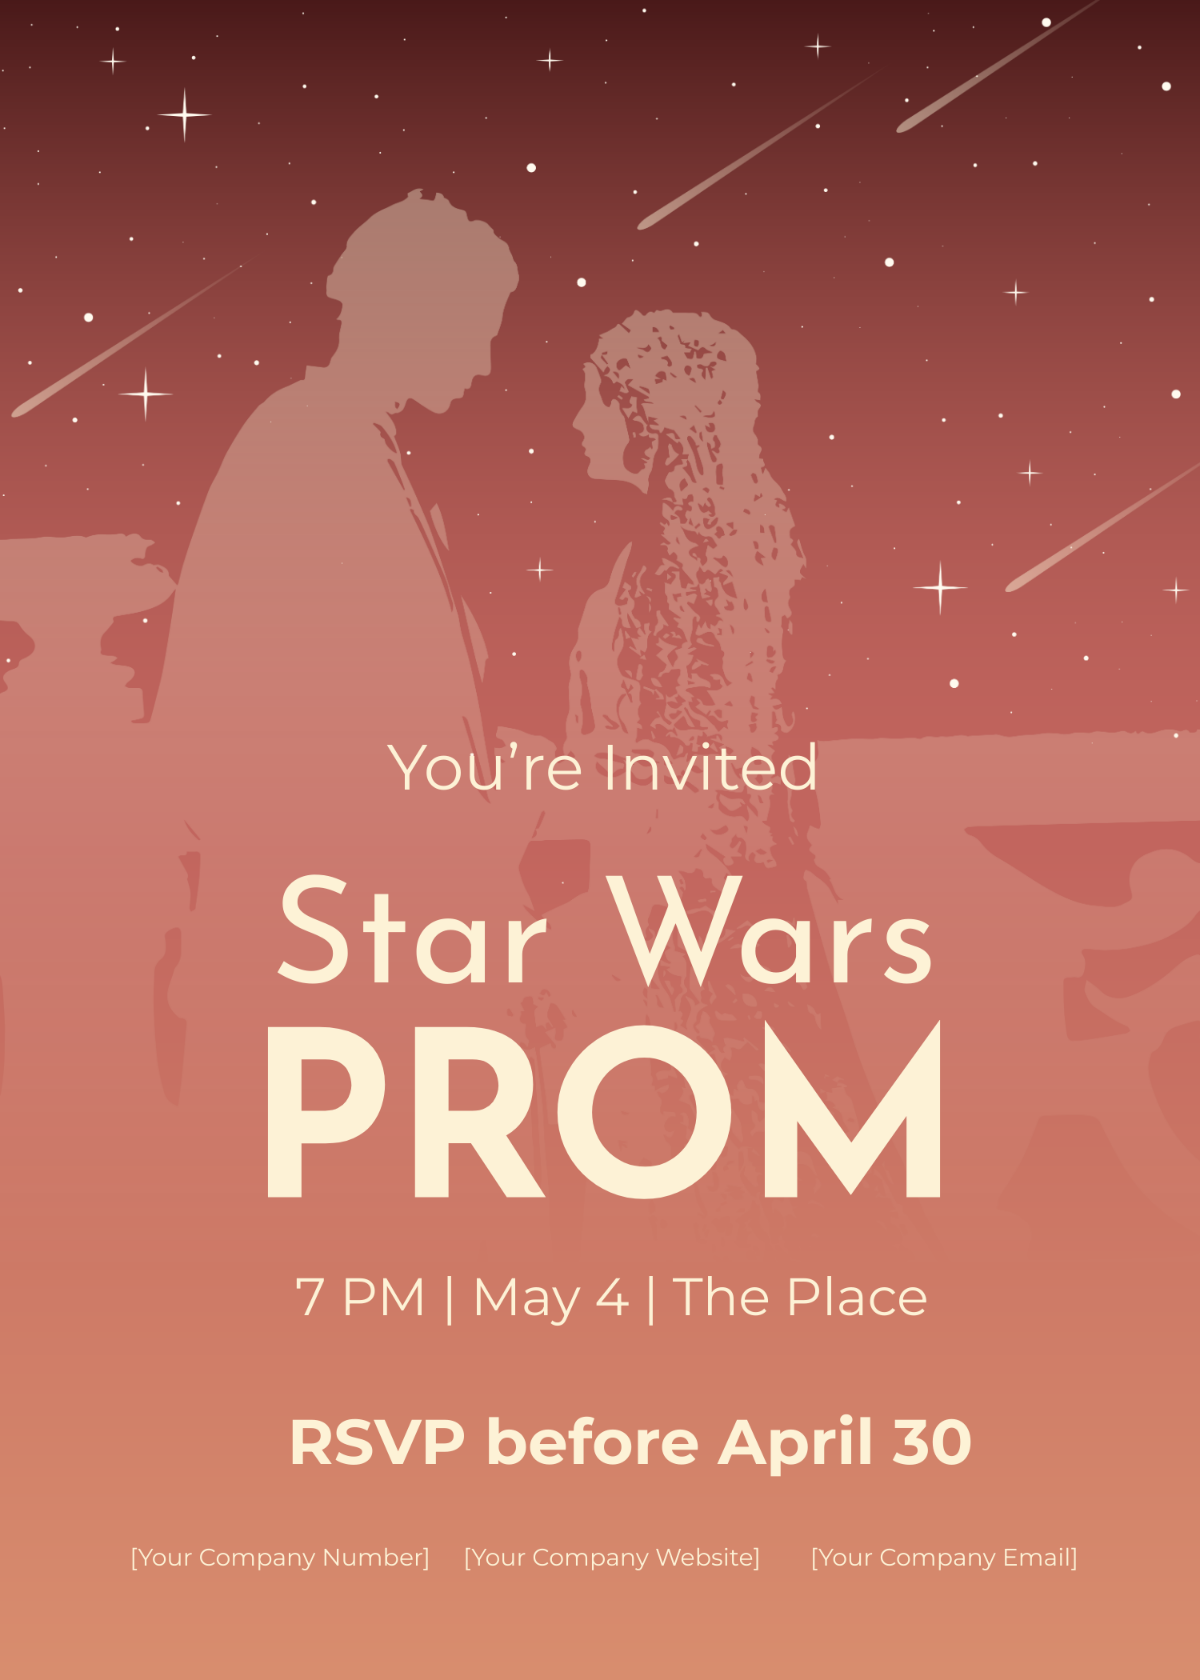 Star Wars Prom Invitation Template